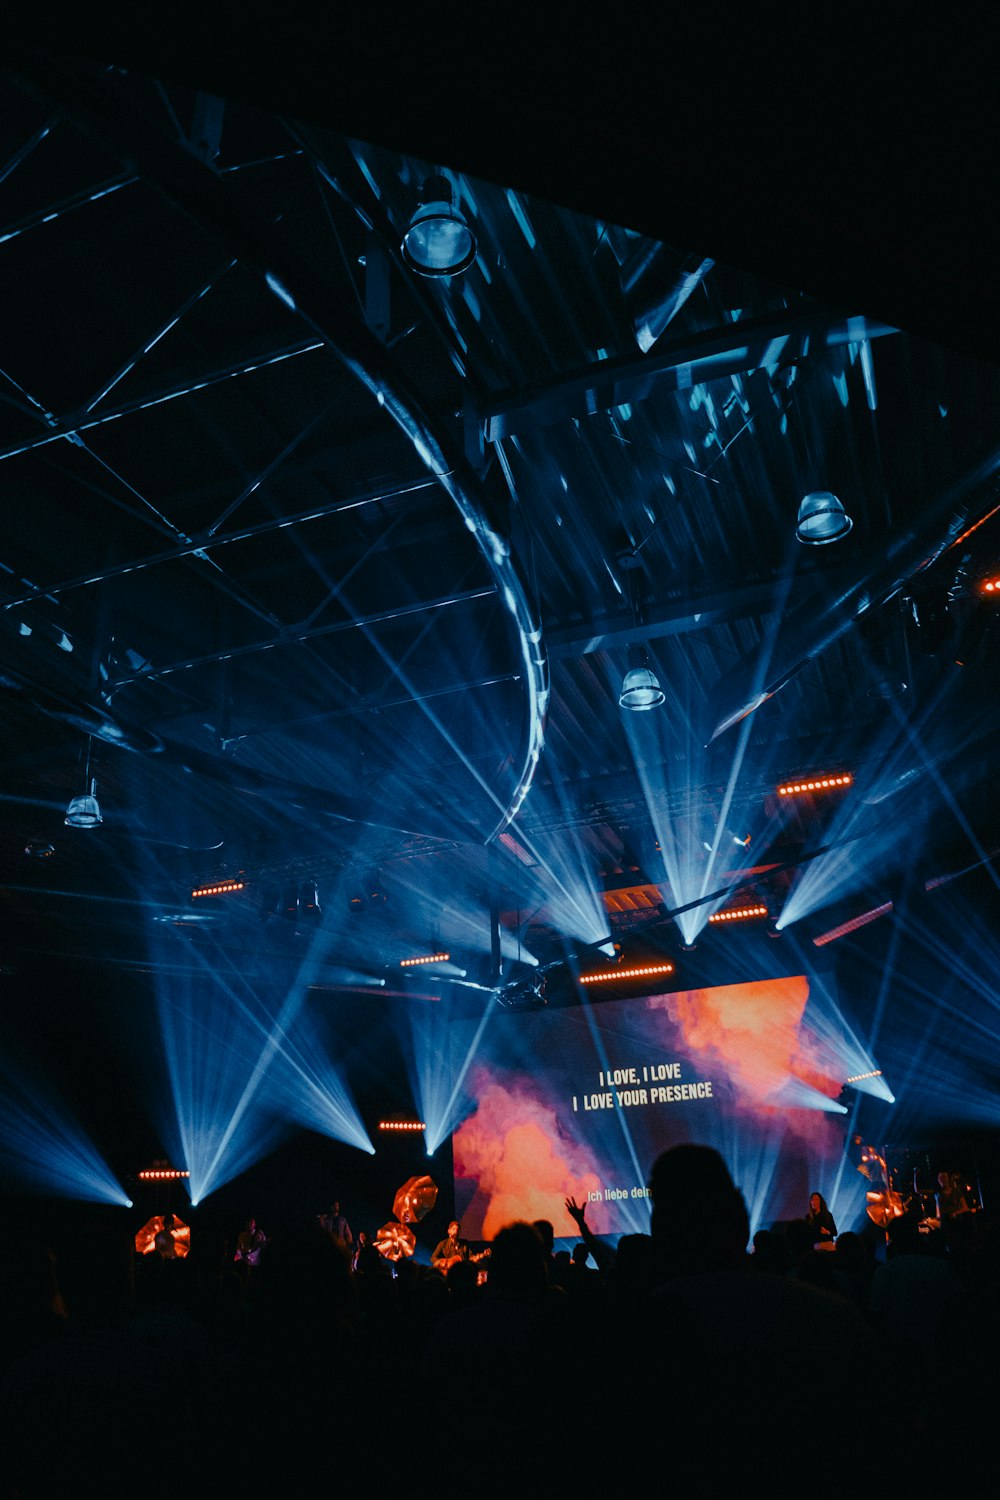 Projektor-Leinwand, die Text auf der Bühne mit Lichtern anzeigt